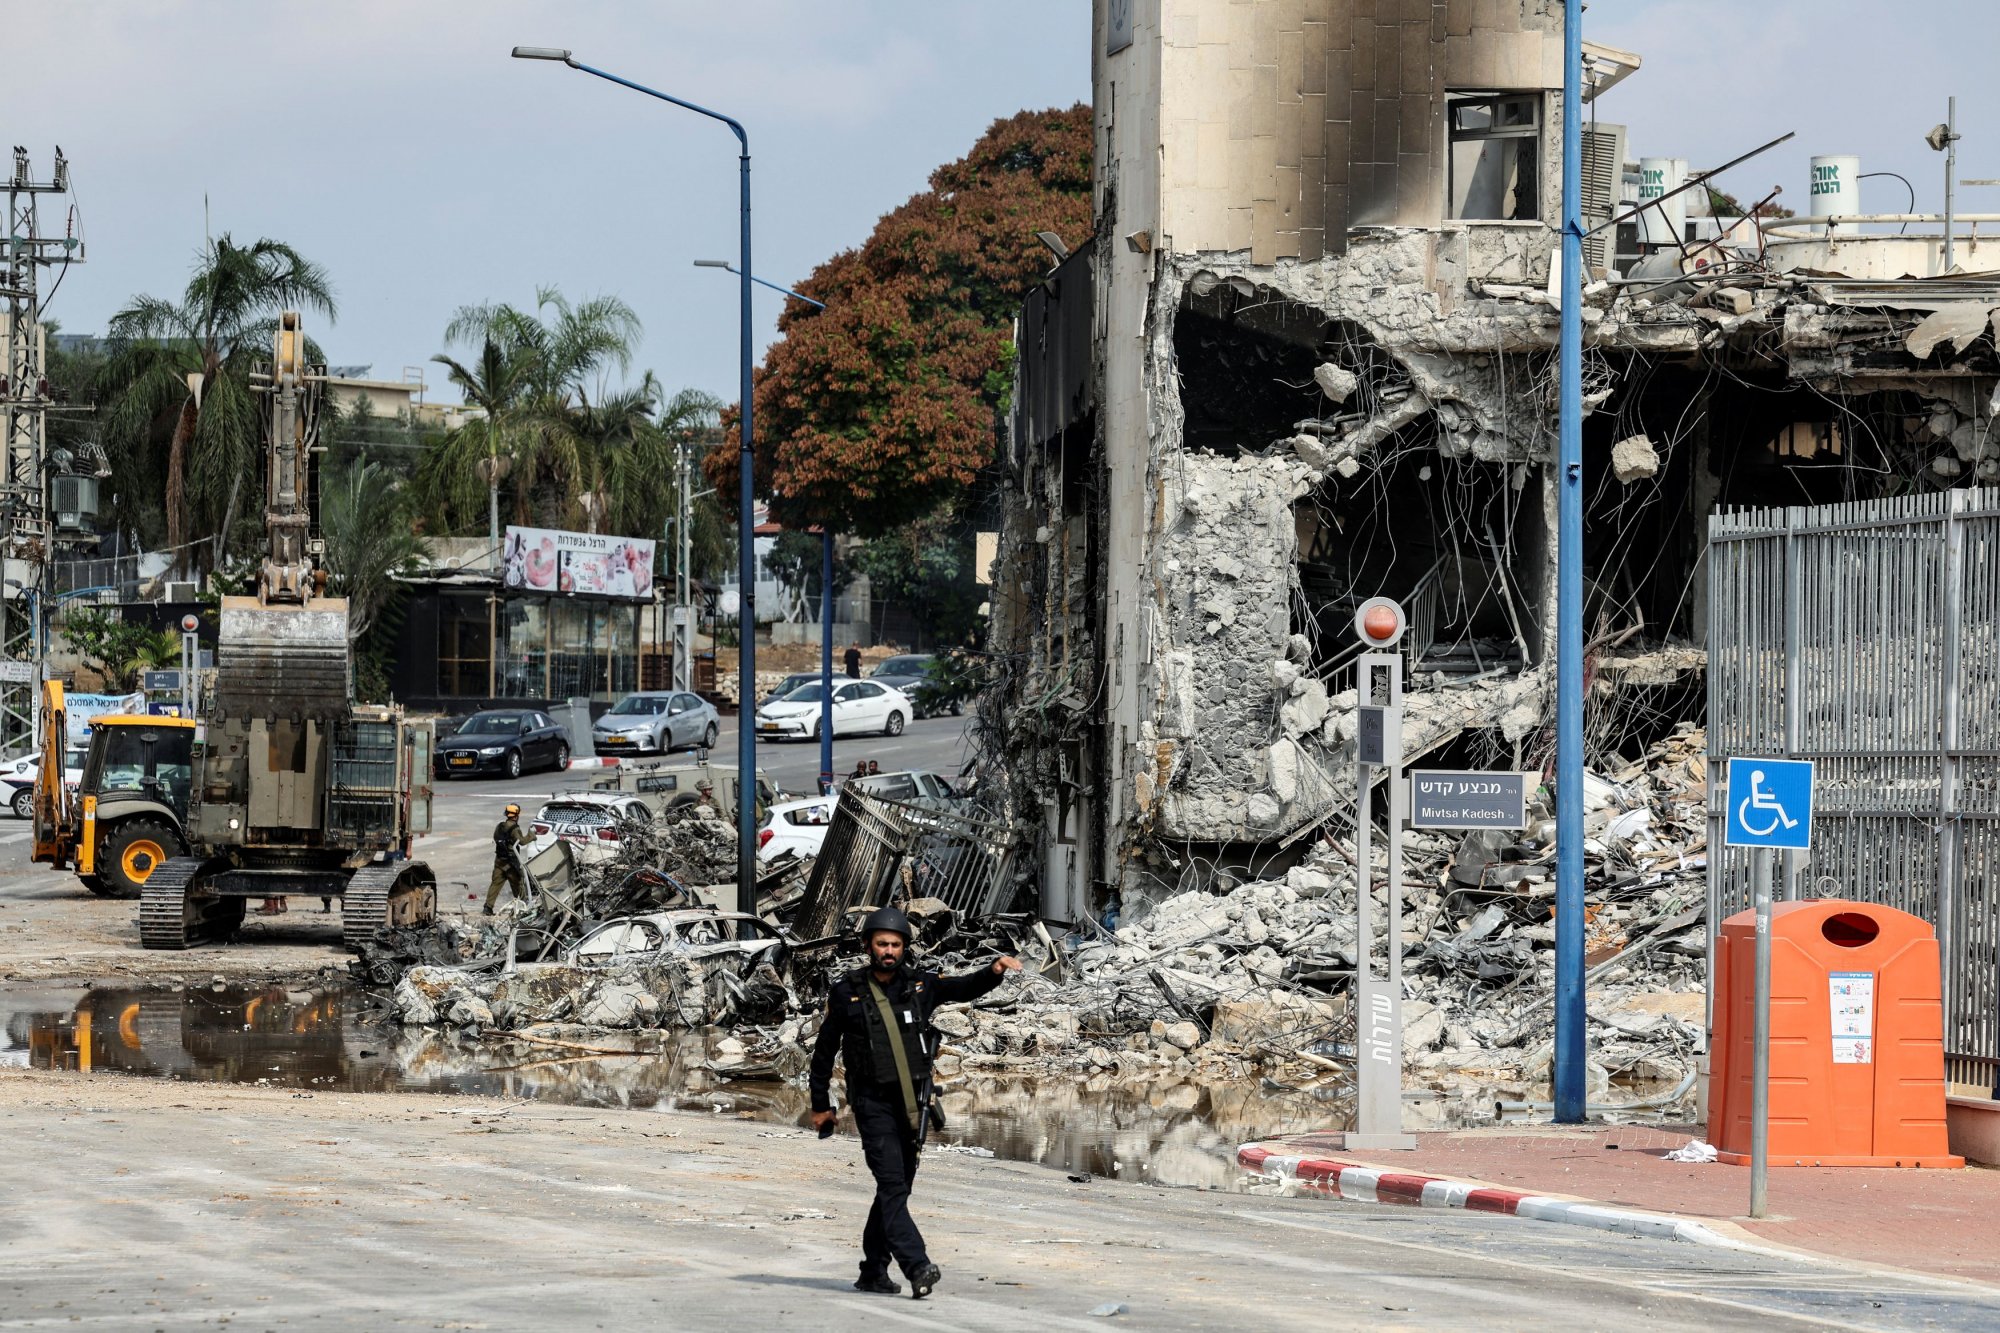 Χαμάς: Ποιοι οι στόχοι της – Τι θέλει να πετύχει το Ισραήλ